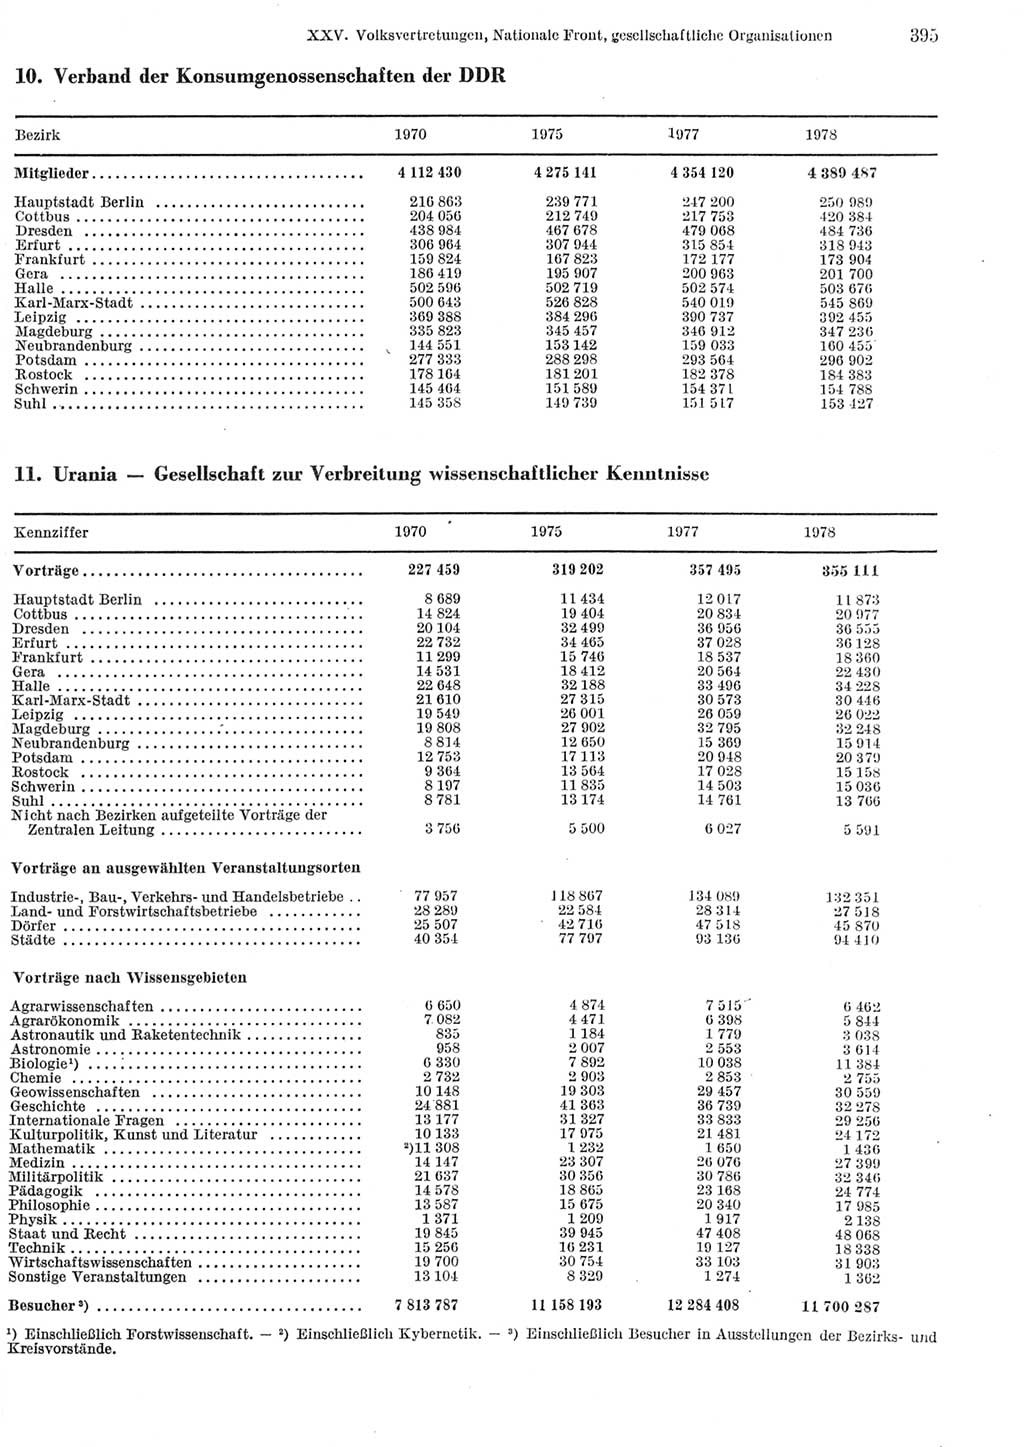 Statistisches Jahrbuch der Deutschen Demokratischen Republik (DDR) 1979, Seite 395 (Stat. Jb. DDR 1979, S. 395)